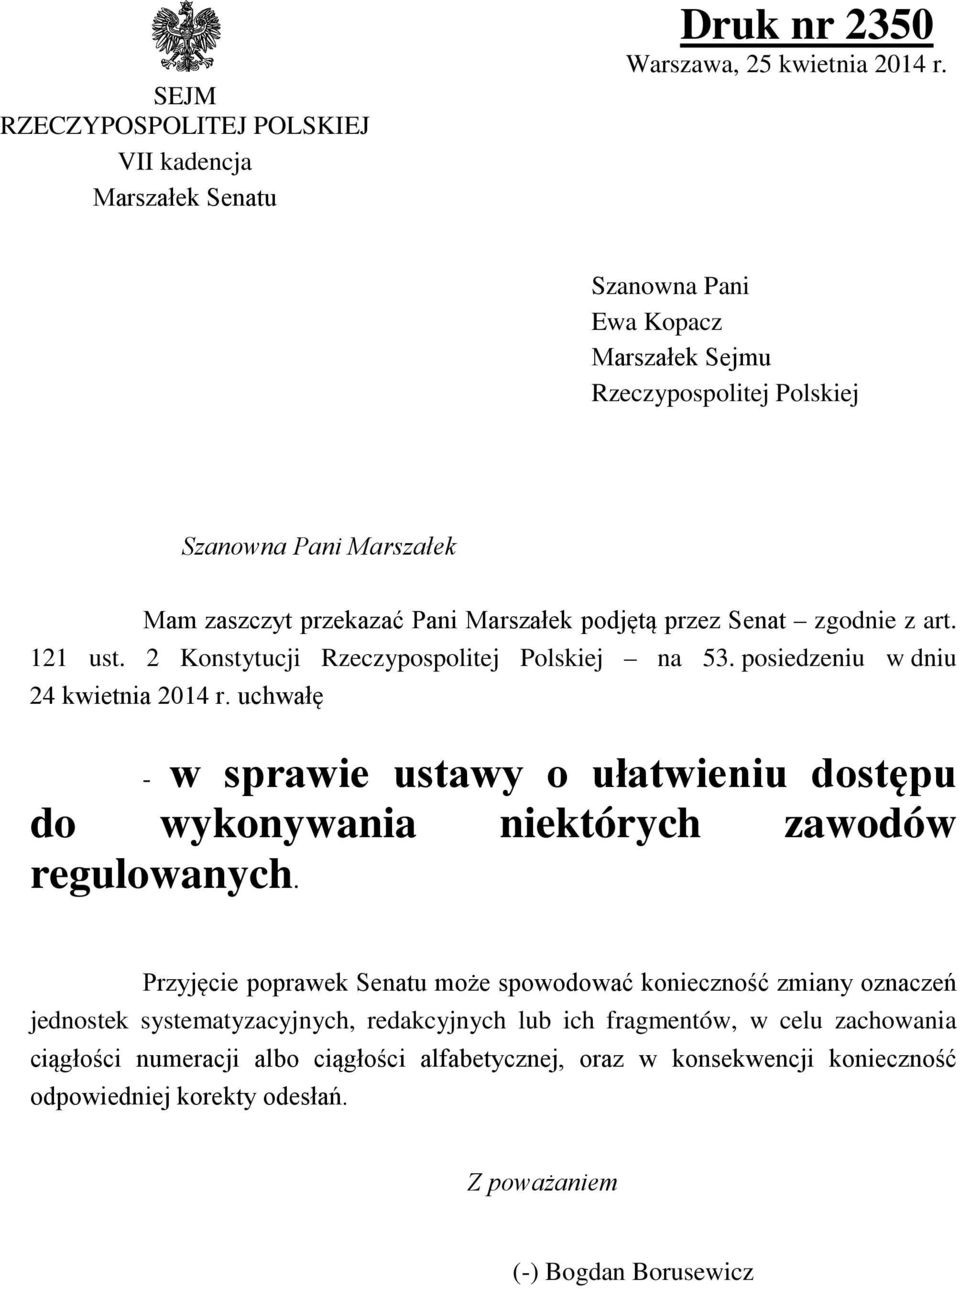 2 Konstytucji Rzeczypospolitej Polskiej na 53. posiedzeniu w dniu 24 kwietnia 2014 r. uchwałę - w sprawie ustawy o ułatwieniu dostępu do wykonywania niektórych zawodów regulowanych.